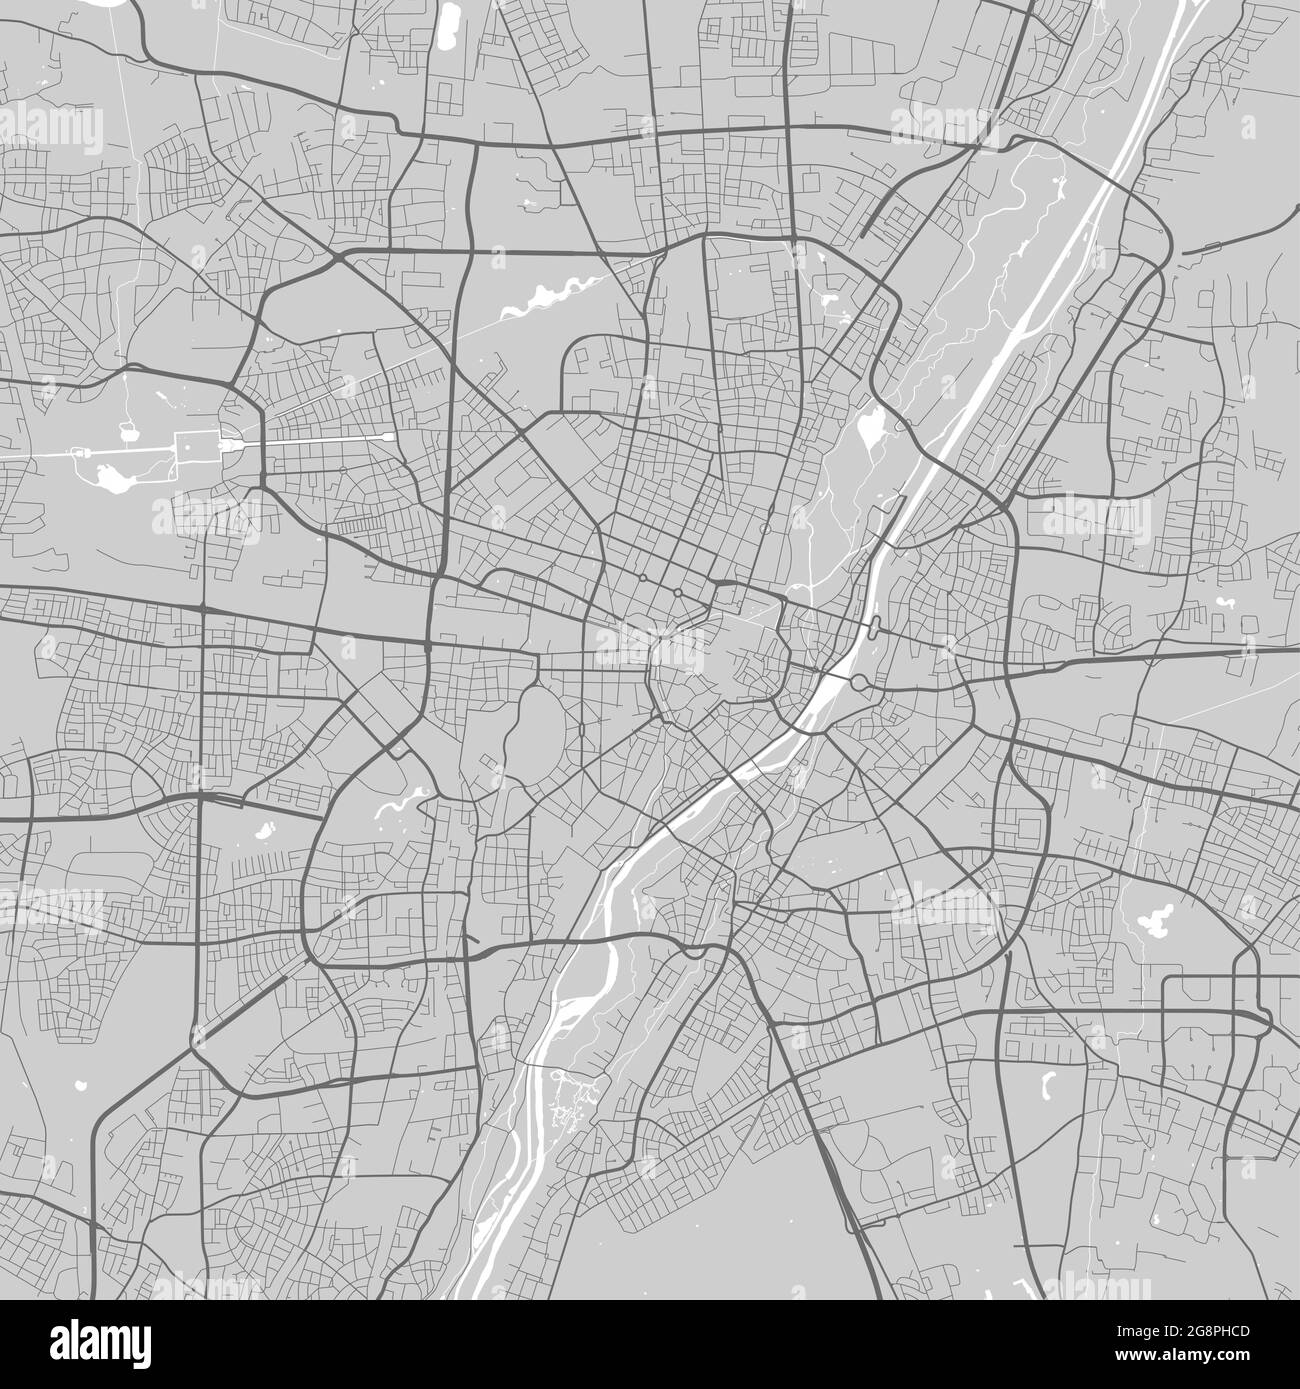 Stadtplan von München. Vektorgrafik, München Karte Graustufen Kunstposter. Straßenkarte mit Straßen, Ansicht der Metropolregion. Stock Vektor